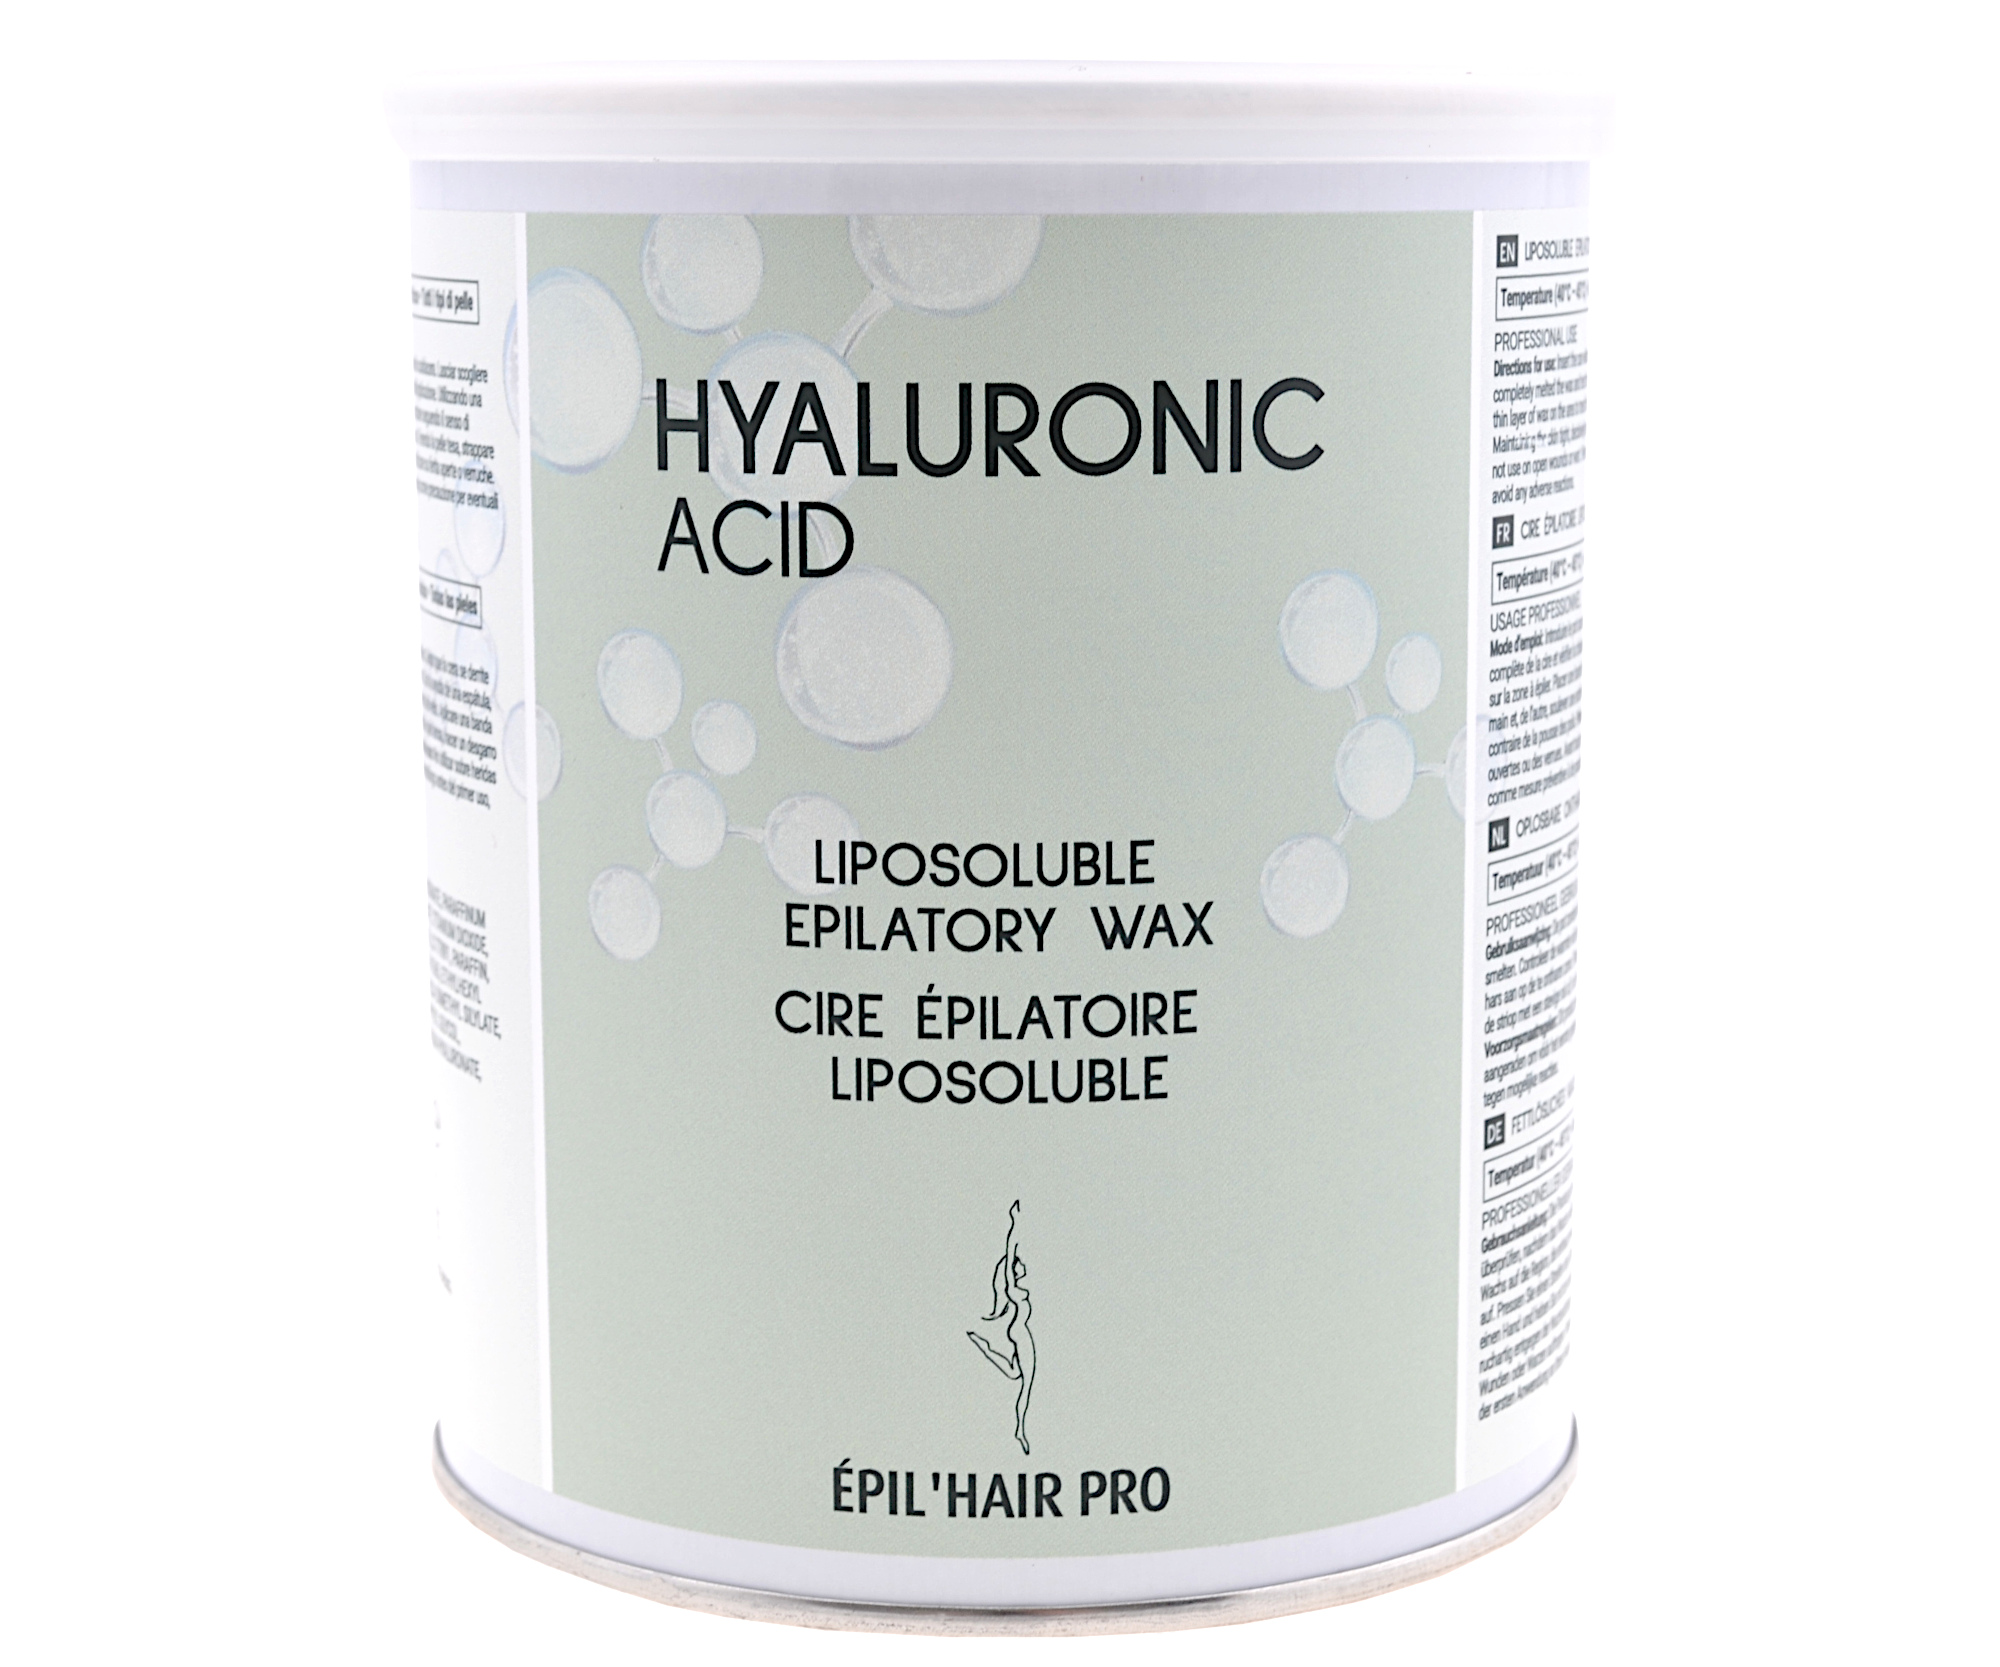 Depilační vosk v plechovce s kyselinou hyaluronovou, pro všechny typy pokožky - 800 ml (7410408) - Sibel + DÁREK ZDARMA